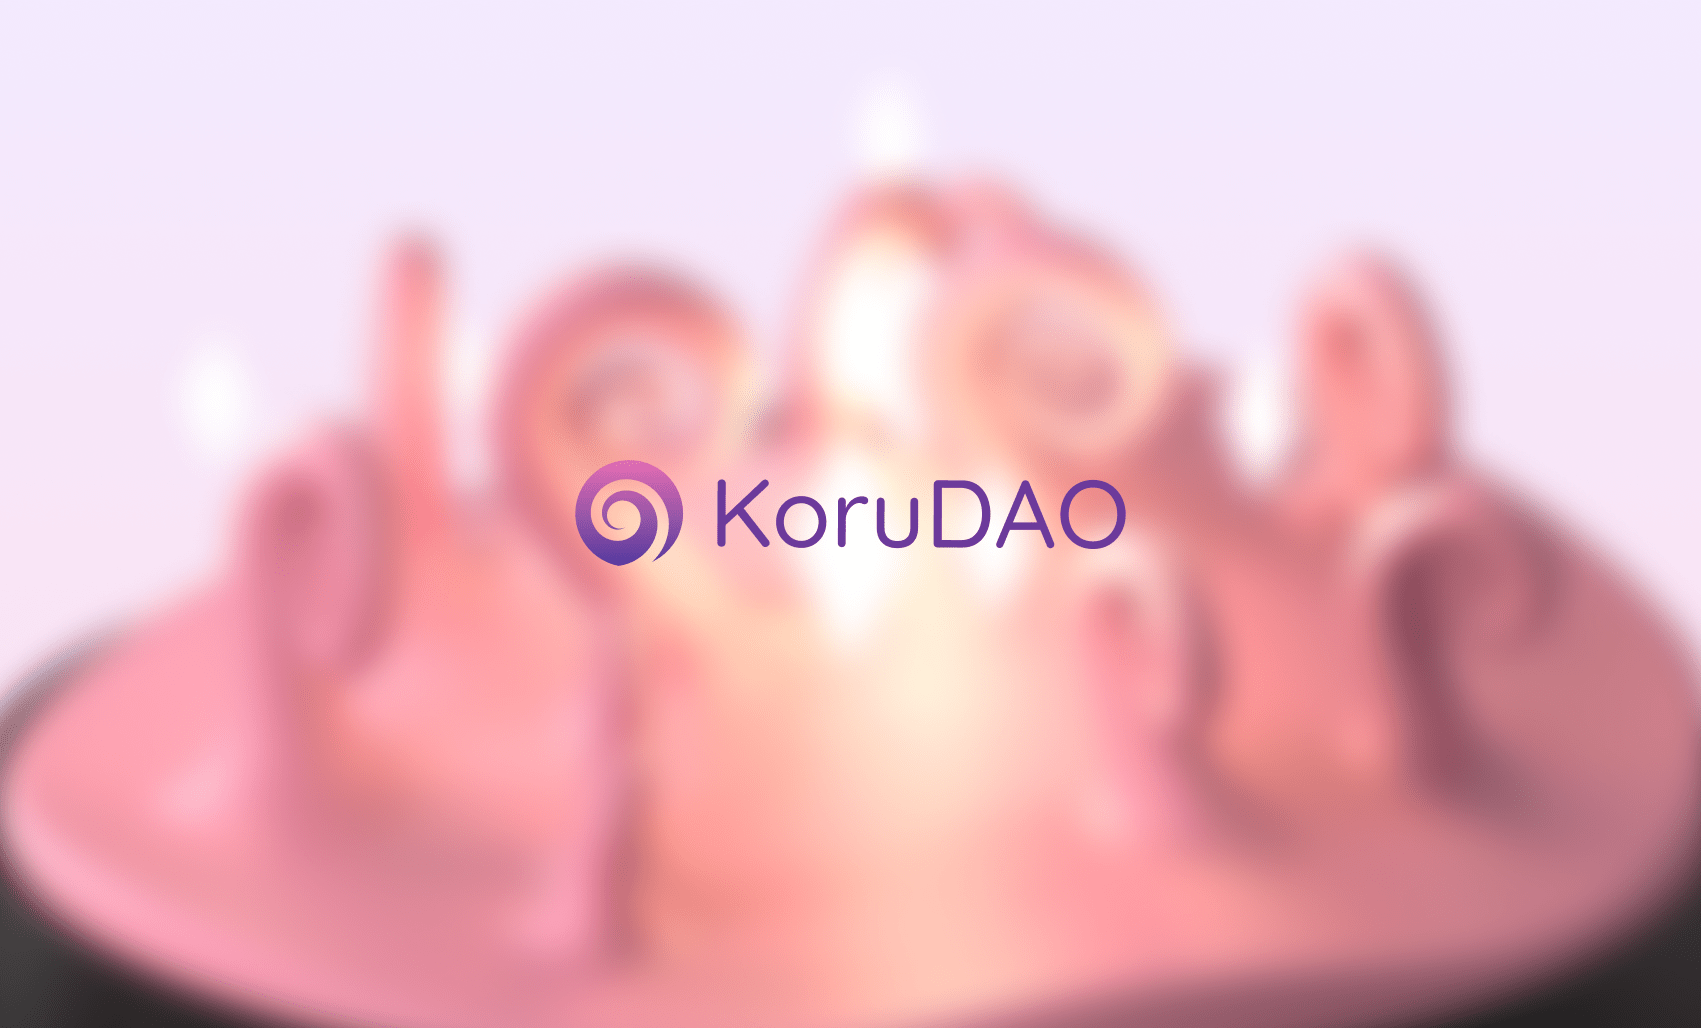 Introducing KoruDAO